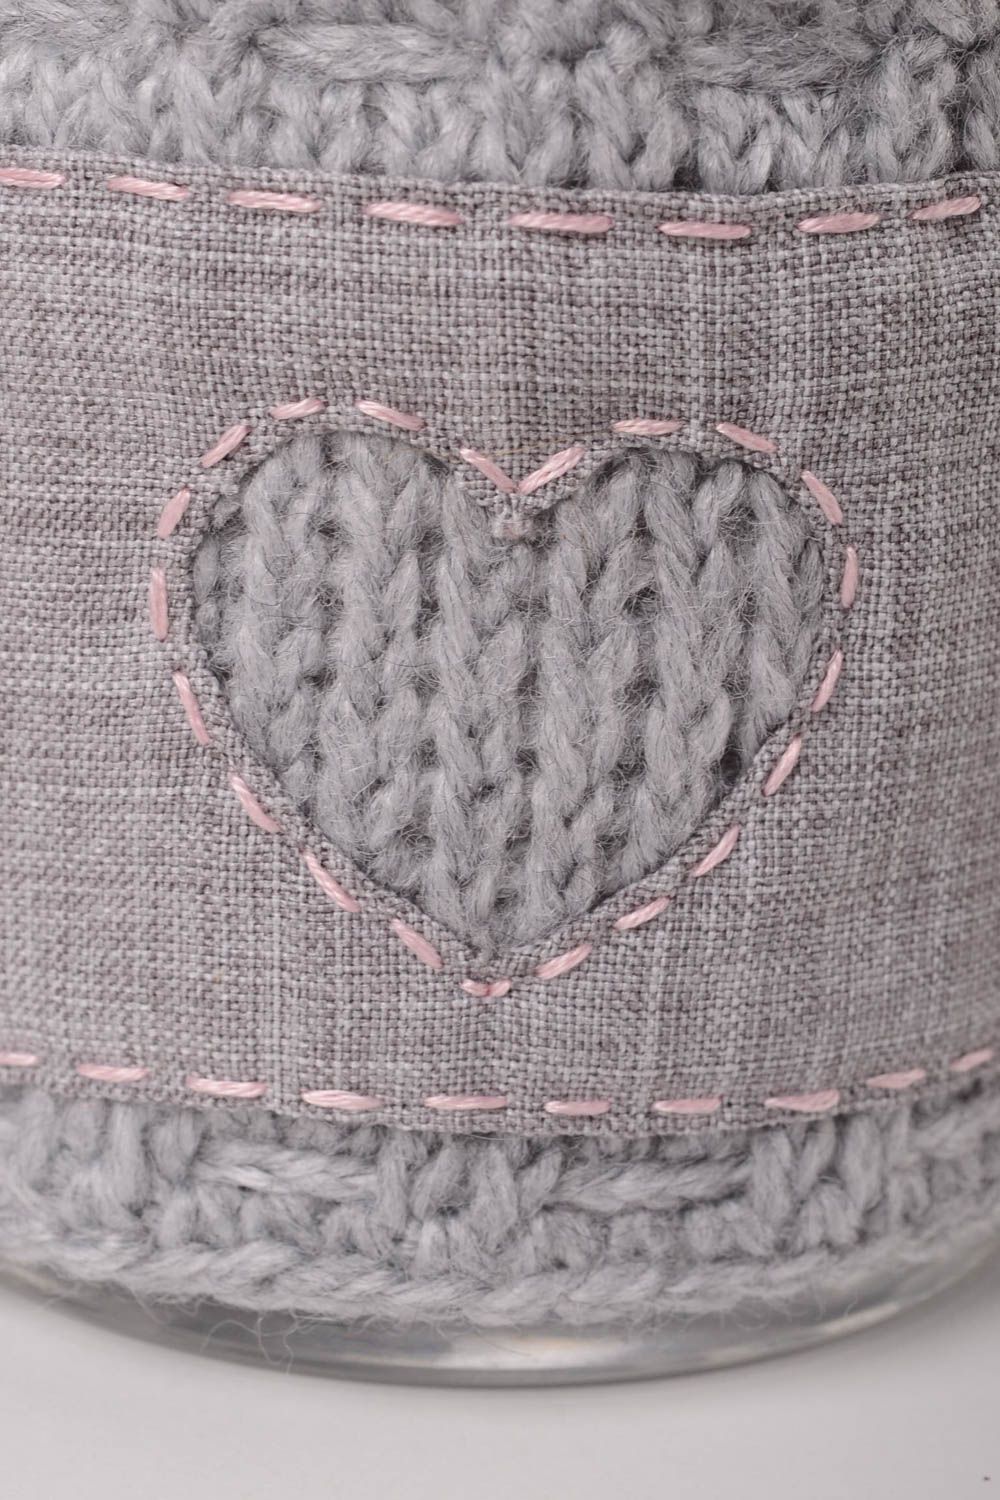 Couvre-tasse tricot fait main cadeau textile Pull pour mug original design photo 4